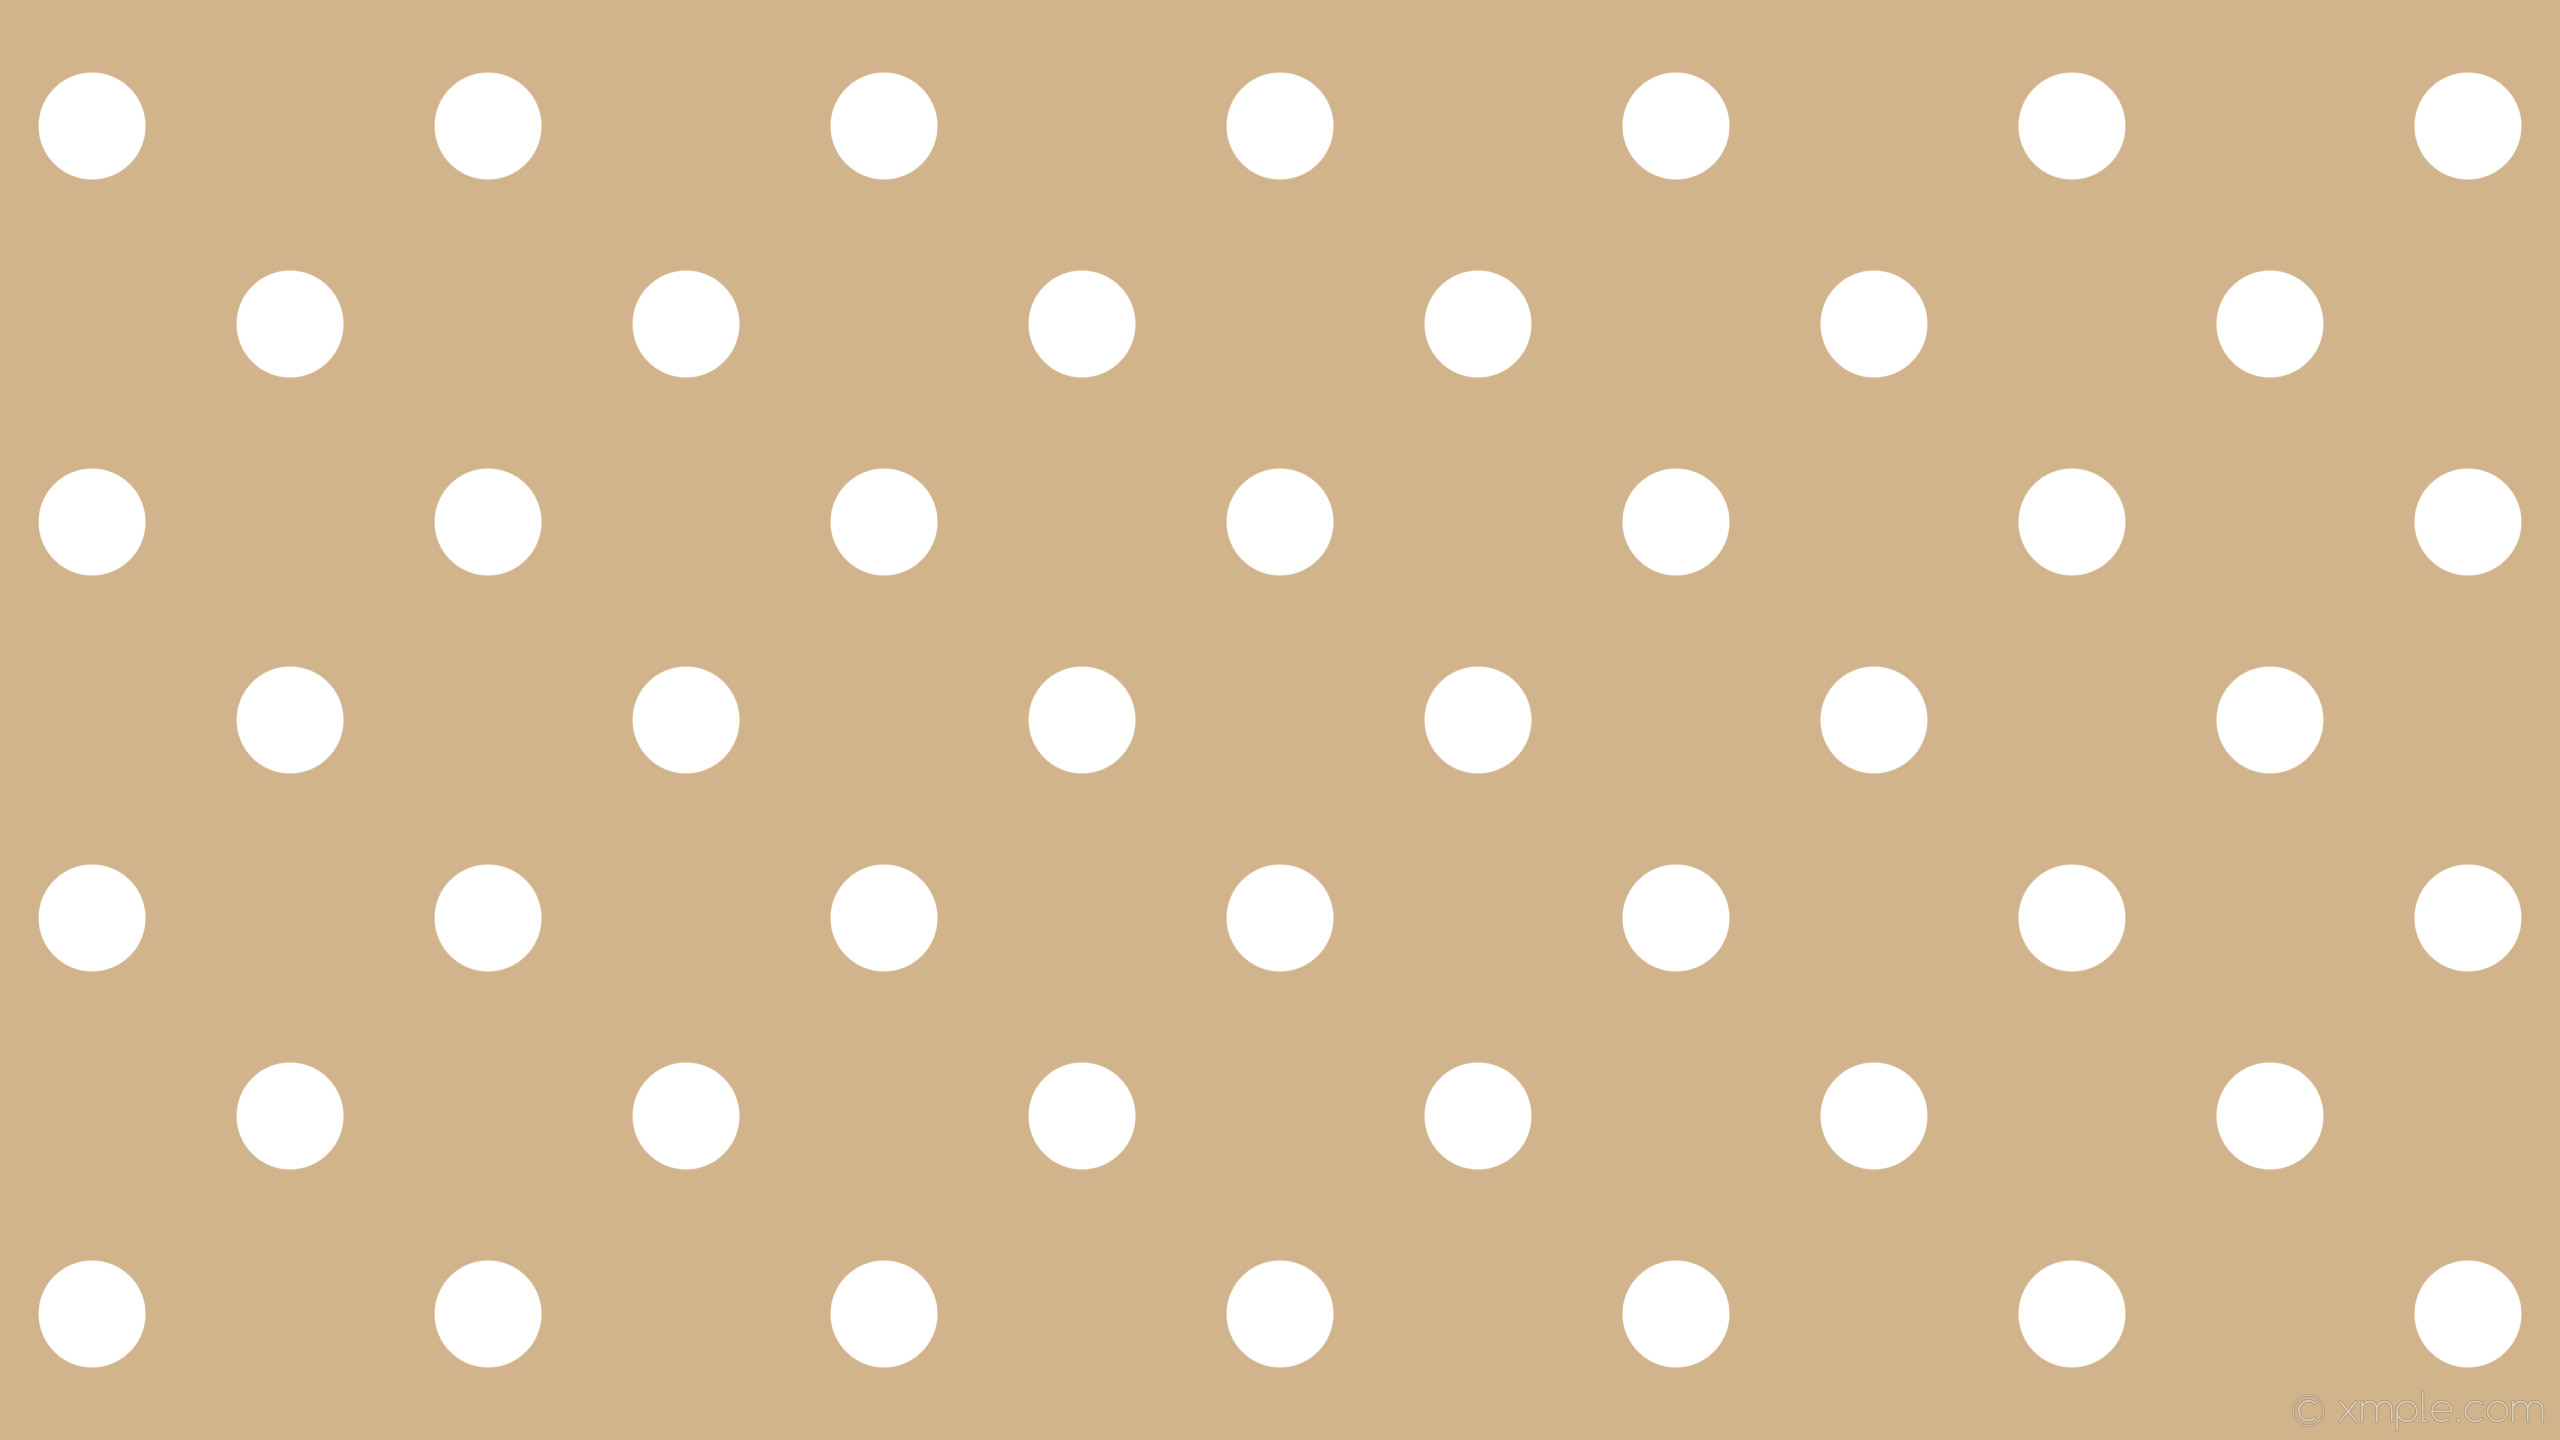 2560x1440 wallpaper brown dots spots polka white tan #d2b48c #ffffff 315Â° 107px 280px